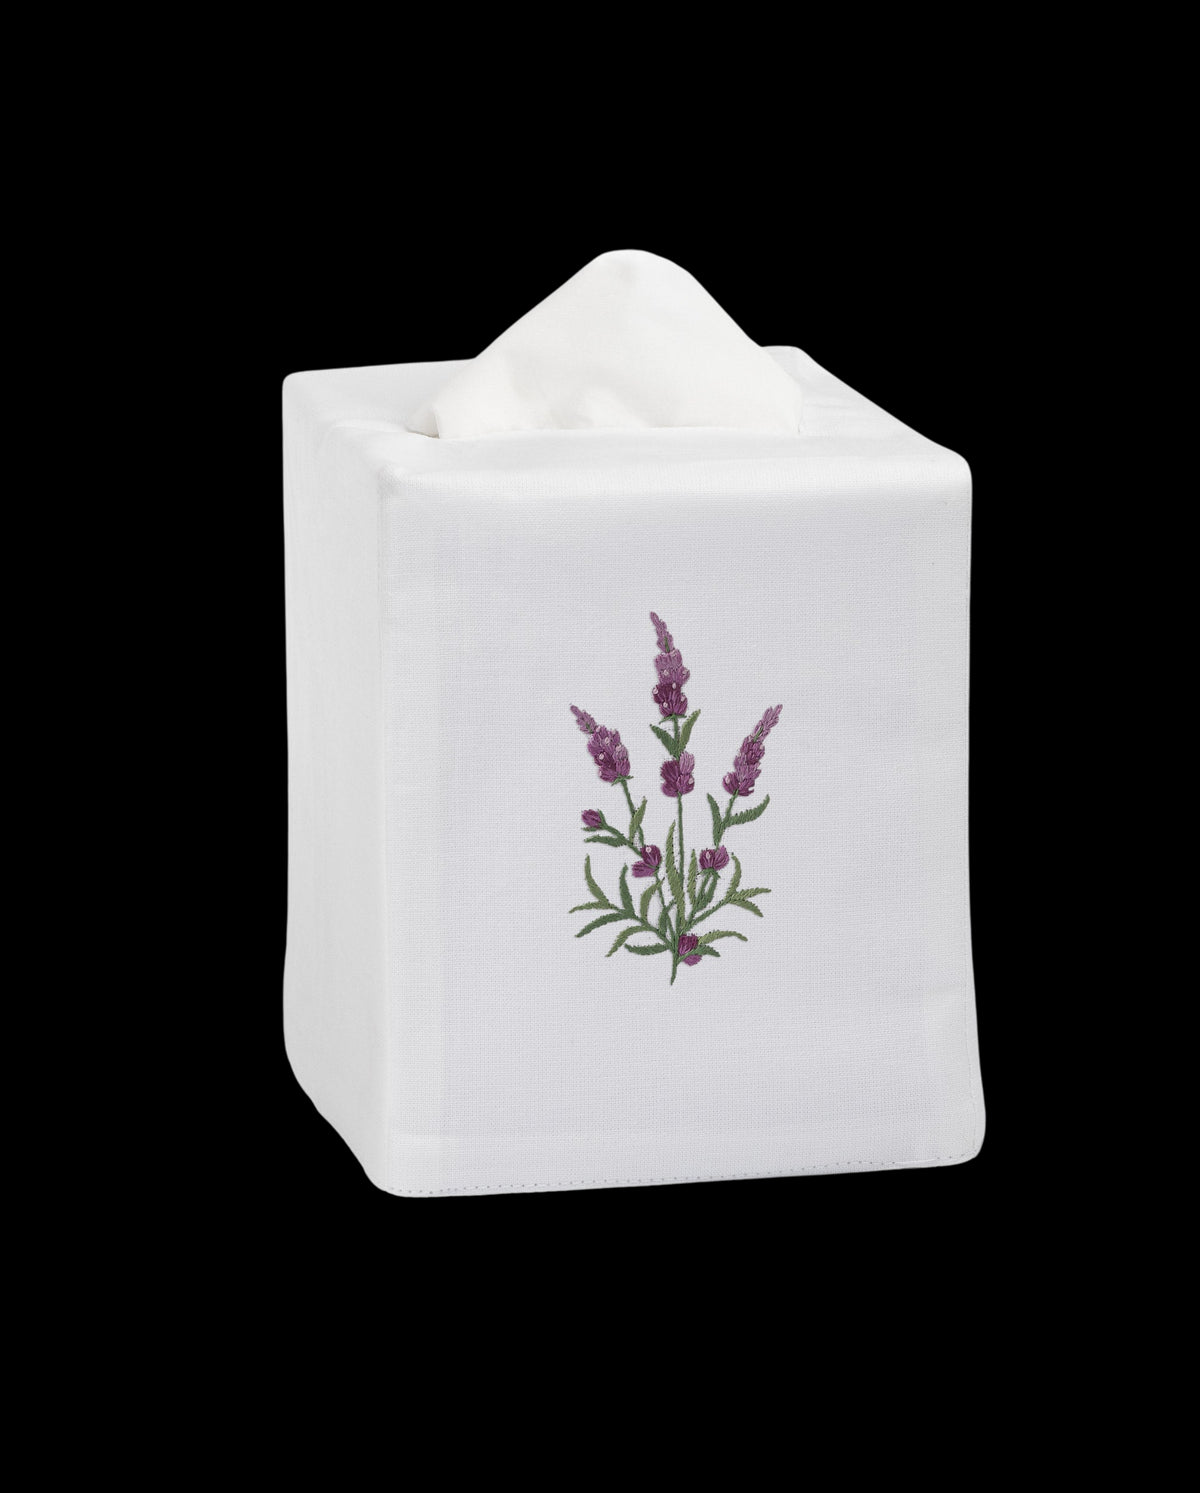 Lavender Botanical Tissue Box Cover